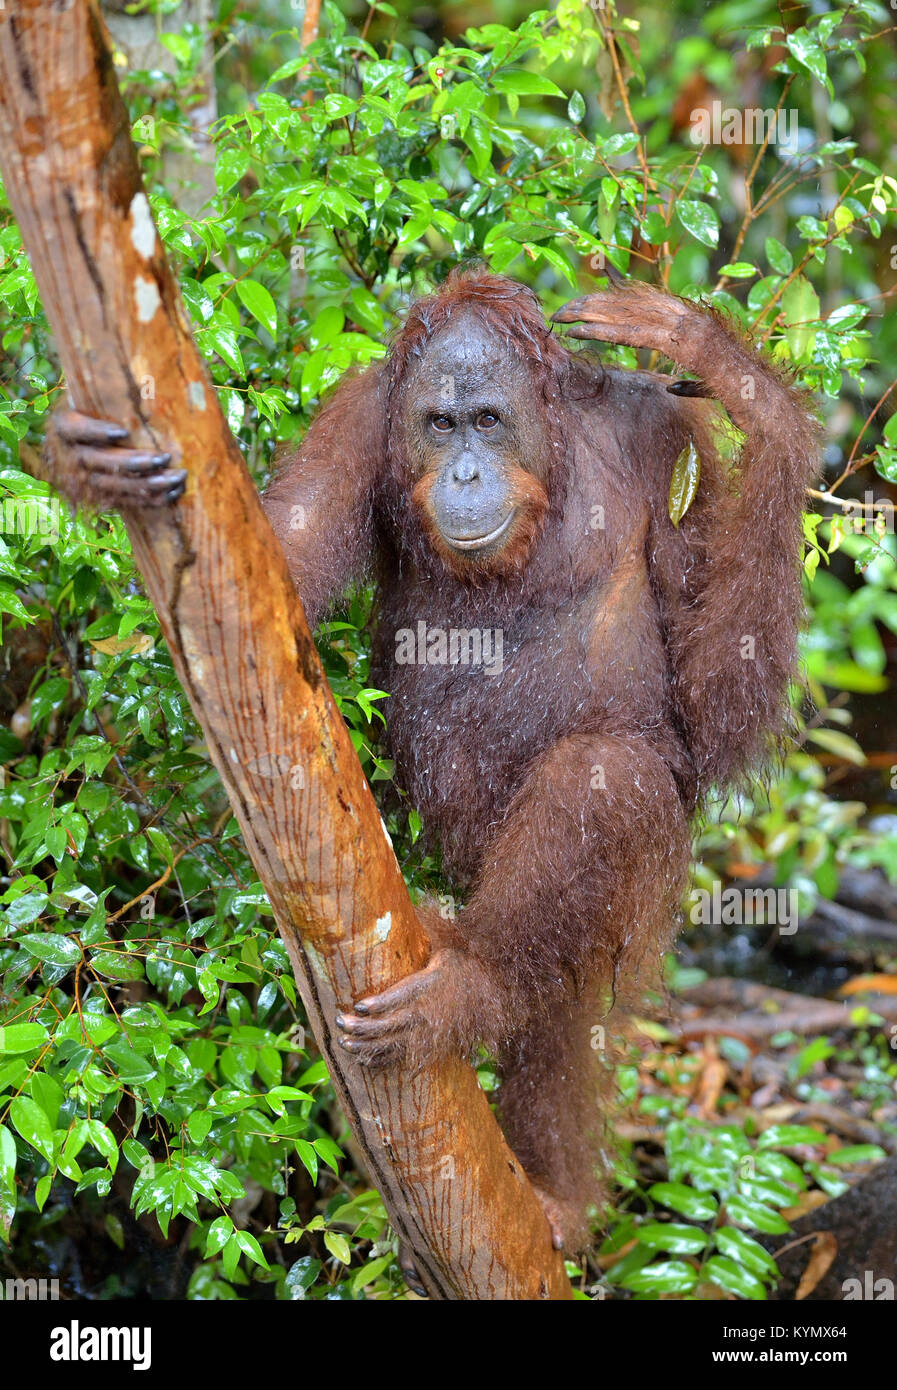 Bornean orangutan sull'albero nella natura selvaggia. Central Bornean orangutan ( Pongo pygmaeus wurmbii). Habitat naturale. La foresta pluviale tropicale del Borneo. Foto Stock